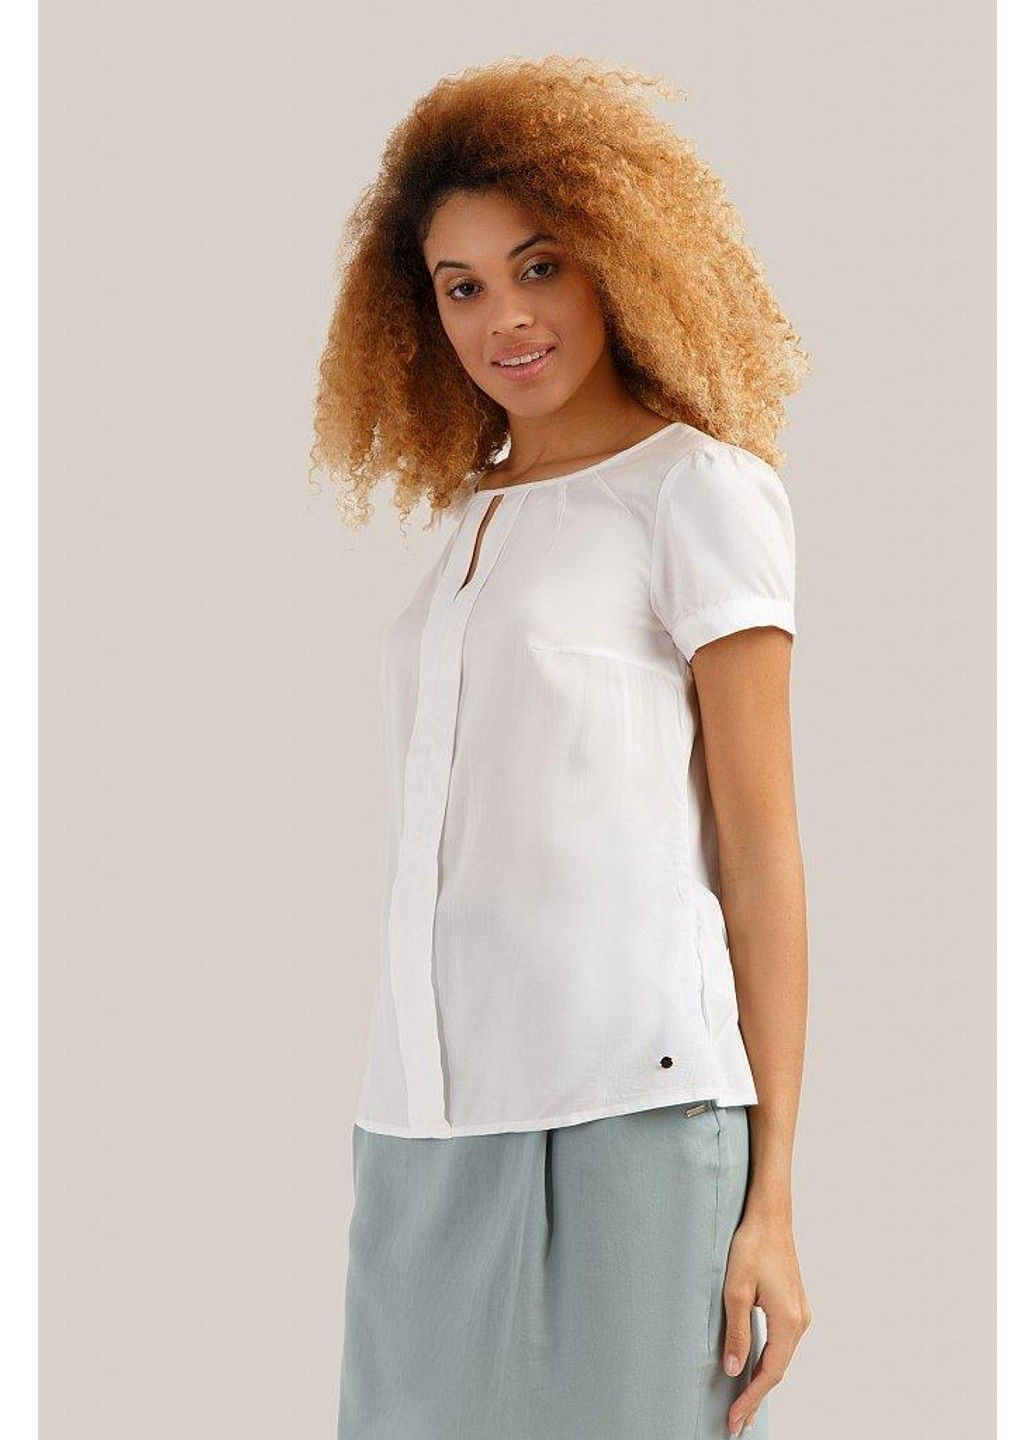 Біла літня блузка s19-11099-201 Finn Flare